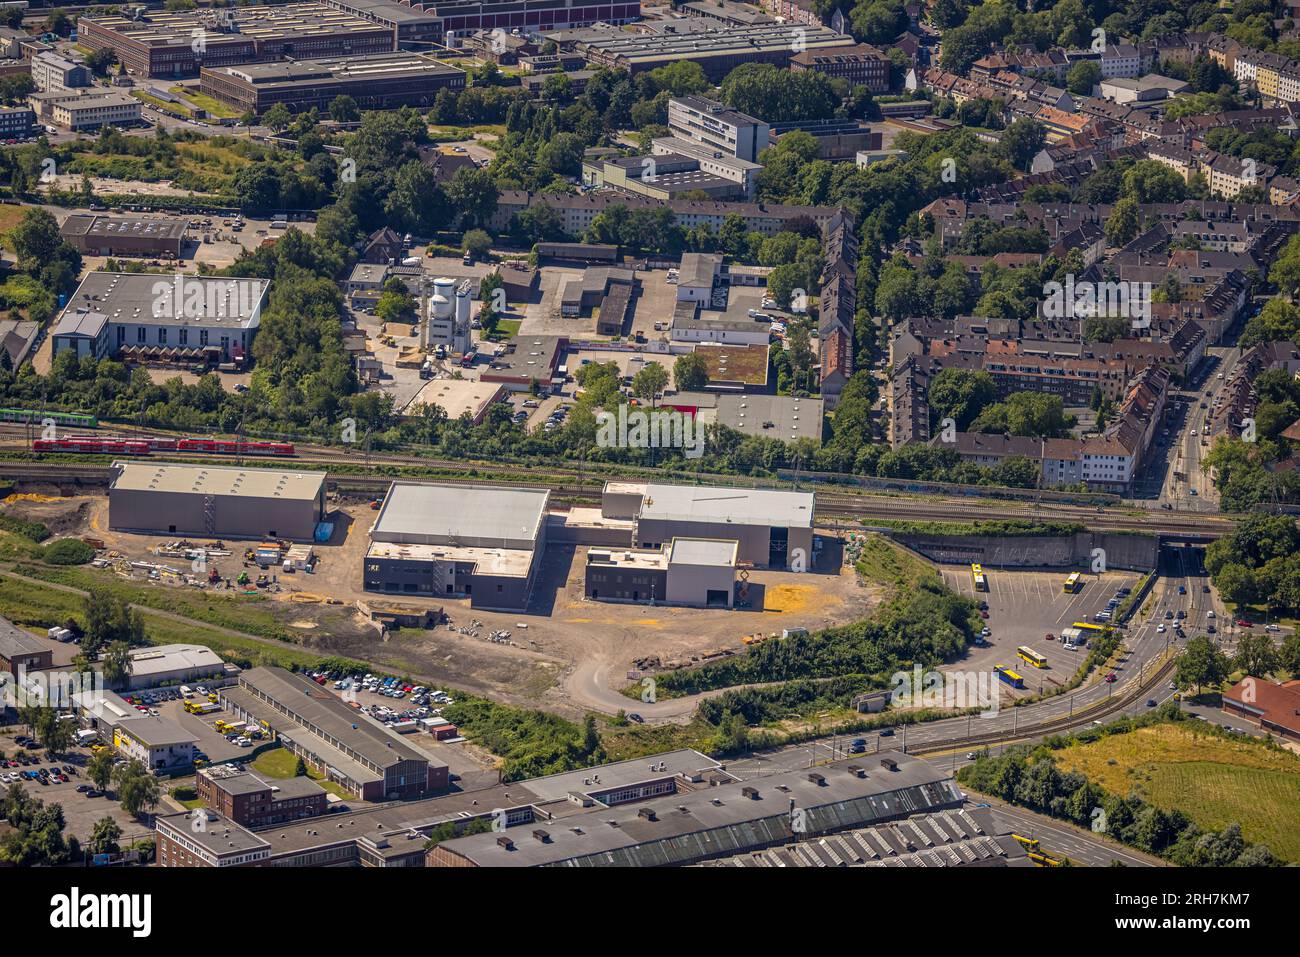 Veduta aerea, RTZ Regional Police Training Center, cantiere e nuovo edificio, Westviertel, Essen, regione della Ruhr, Renania settentrionale-Vestfalia, Germania Foto Stock